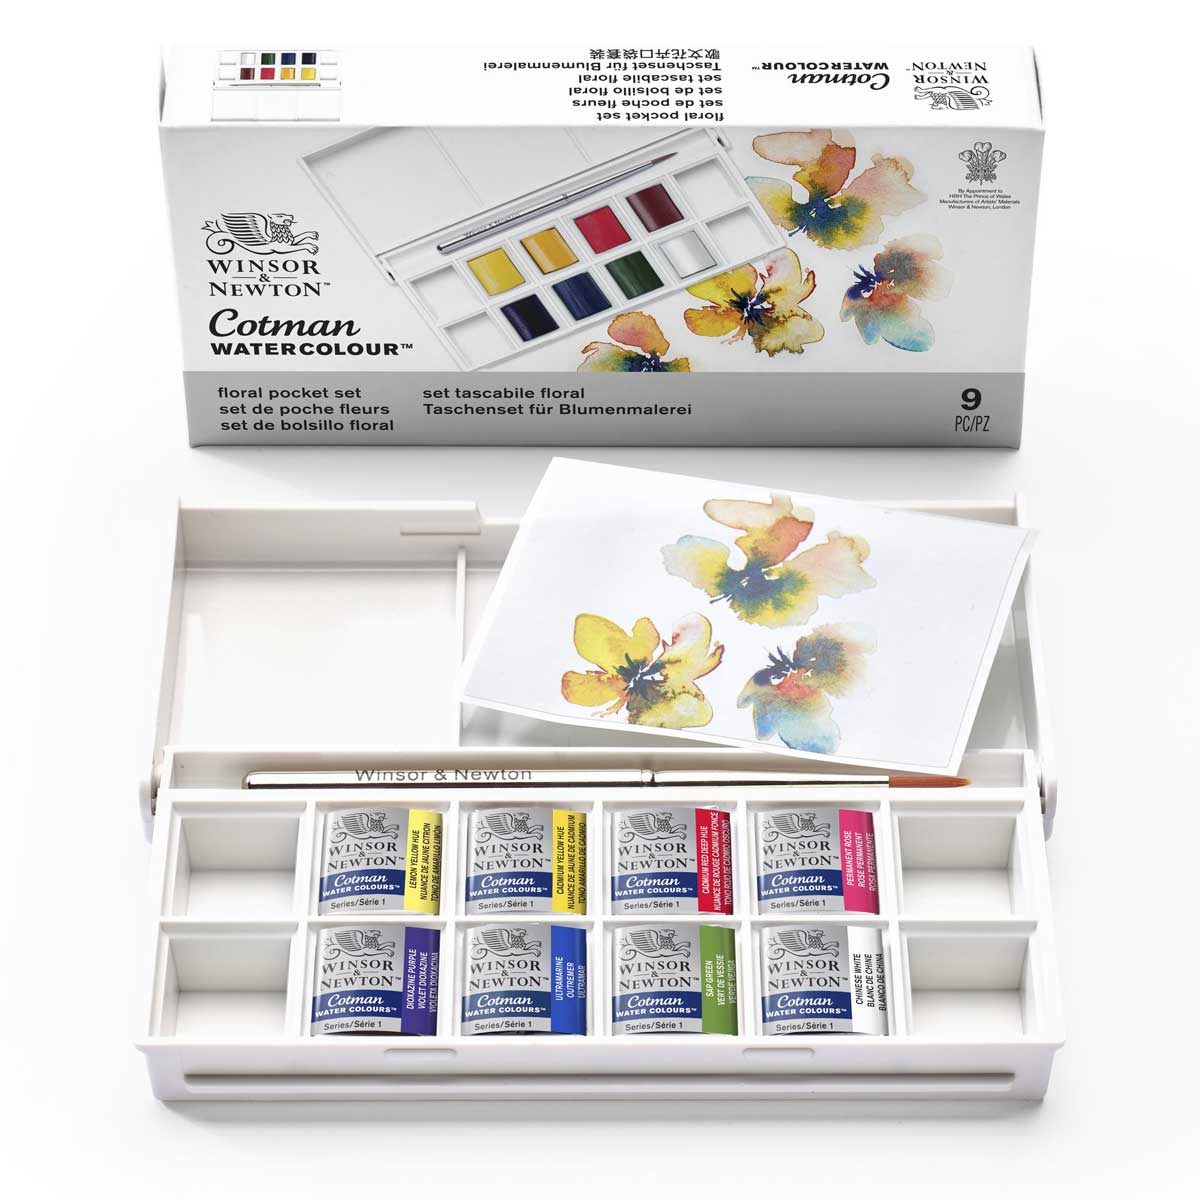 Winsor & Newton - Cotman Watercolour - Pocket Set - Floral